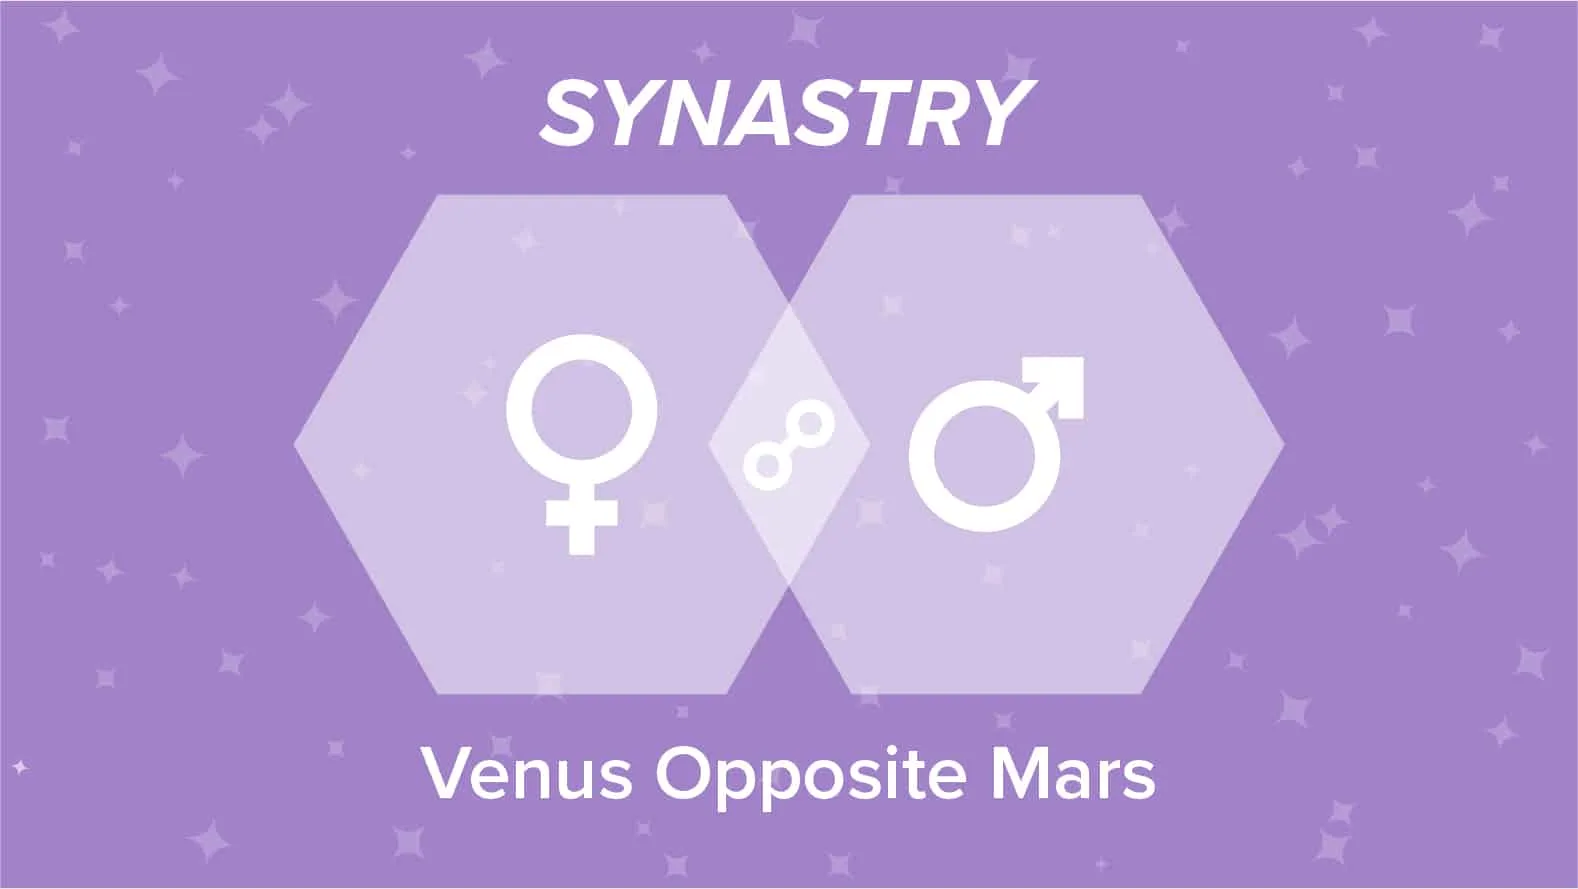 Venus Opposite Mars Synastry